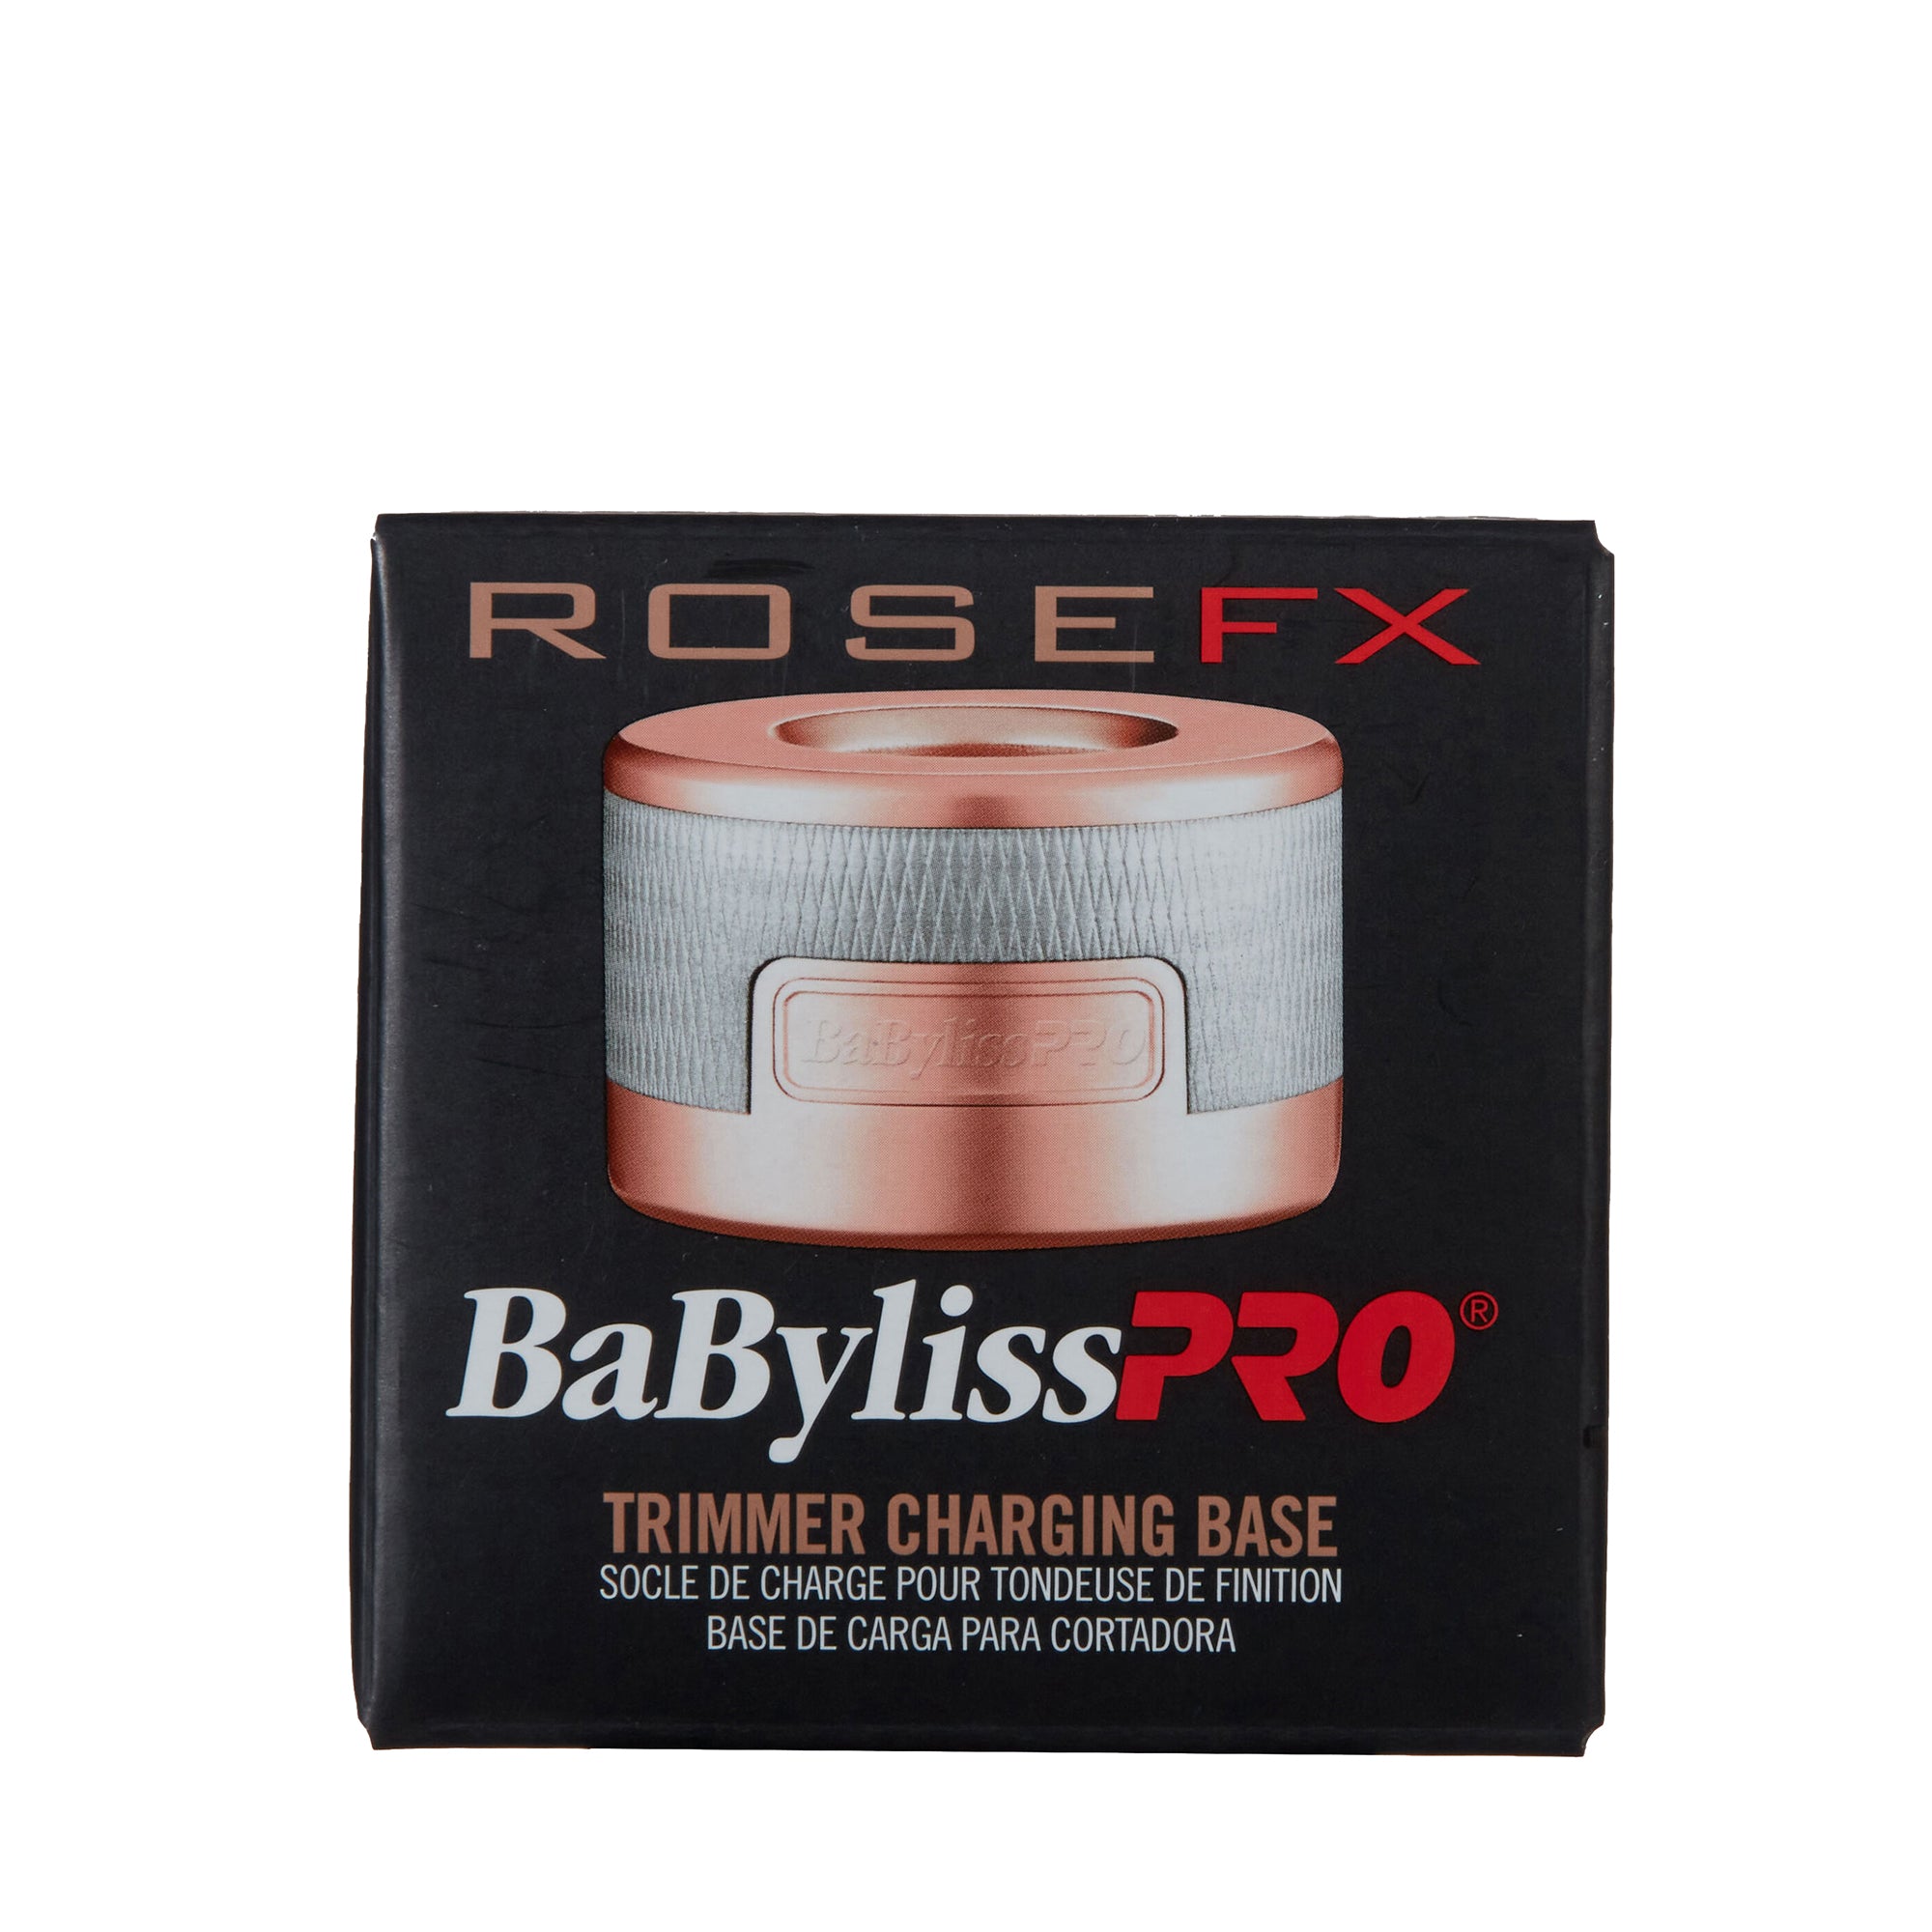 Babylisspro RoseFX Trimmer Charging Base - Item No. FX787BASE-RG